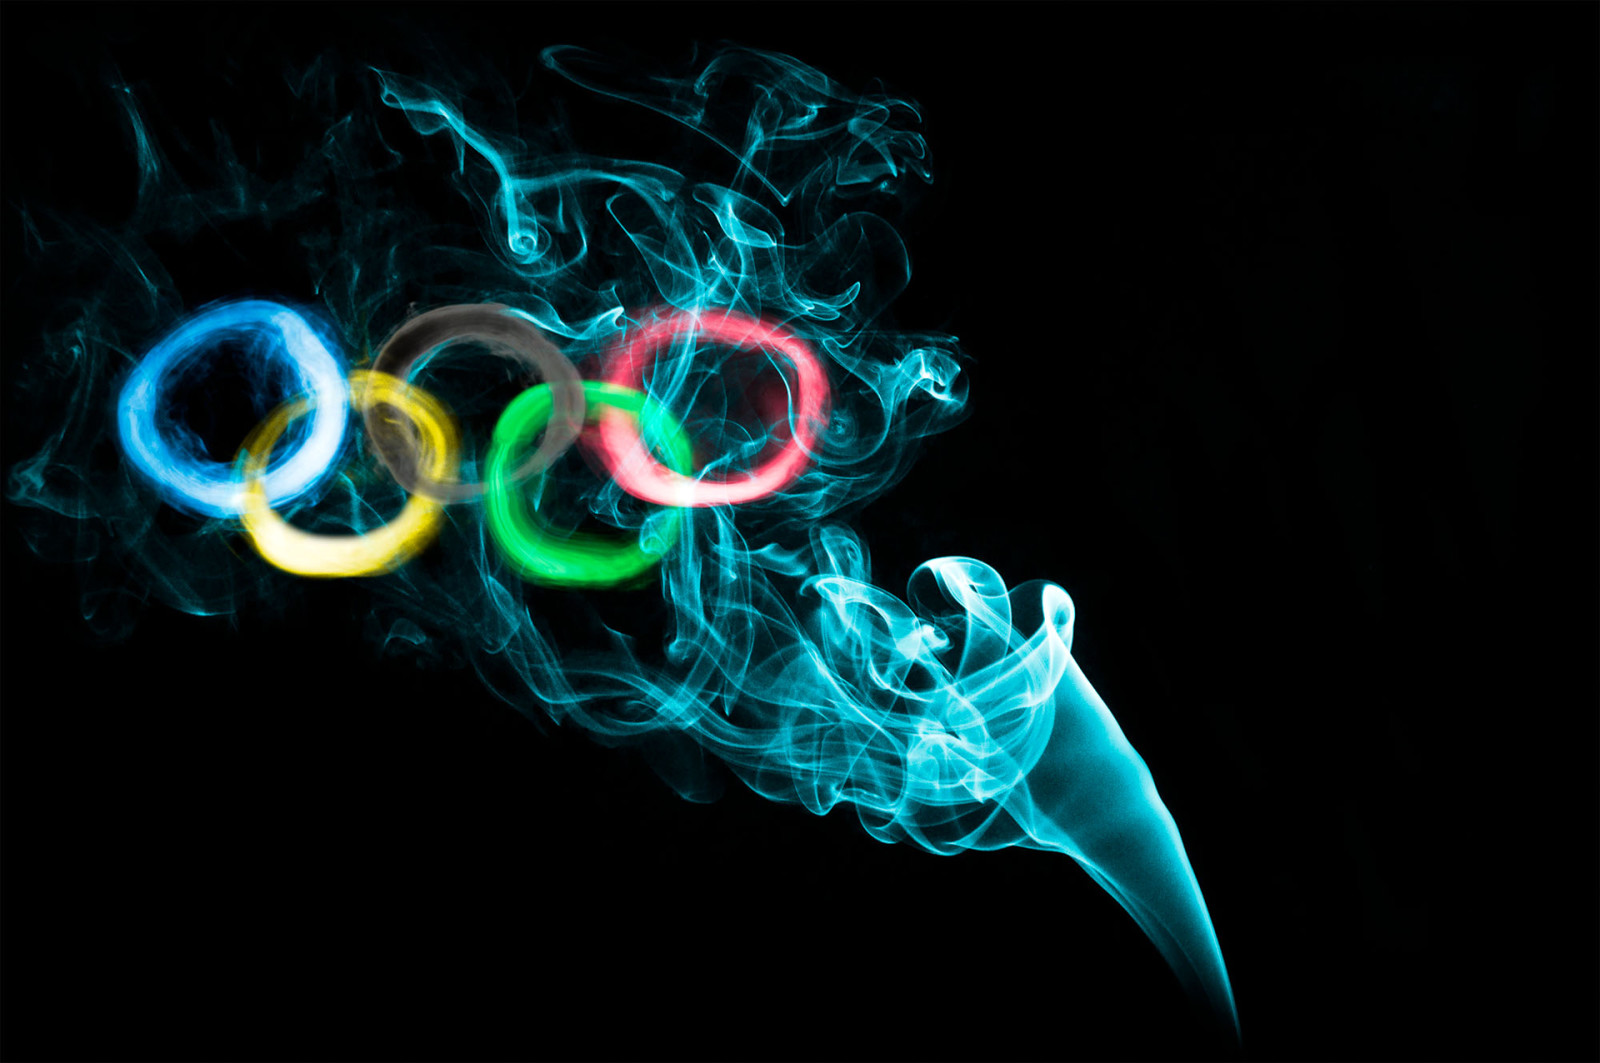 페인트, 반지, 연기, 올림픽